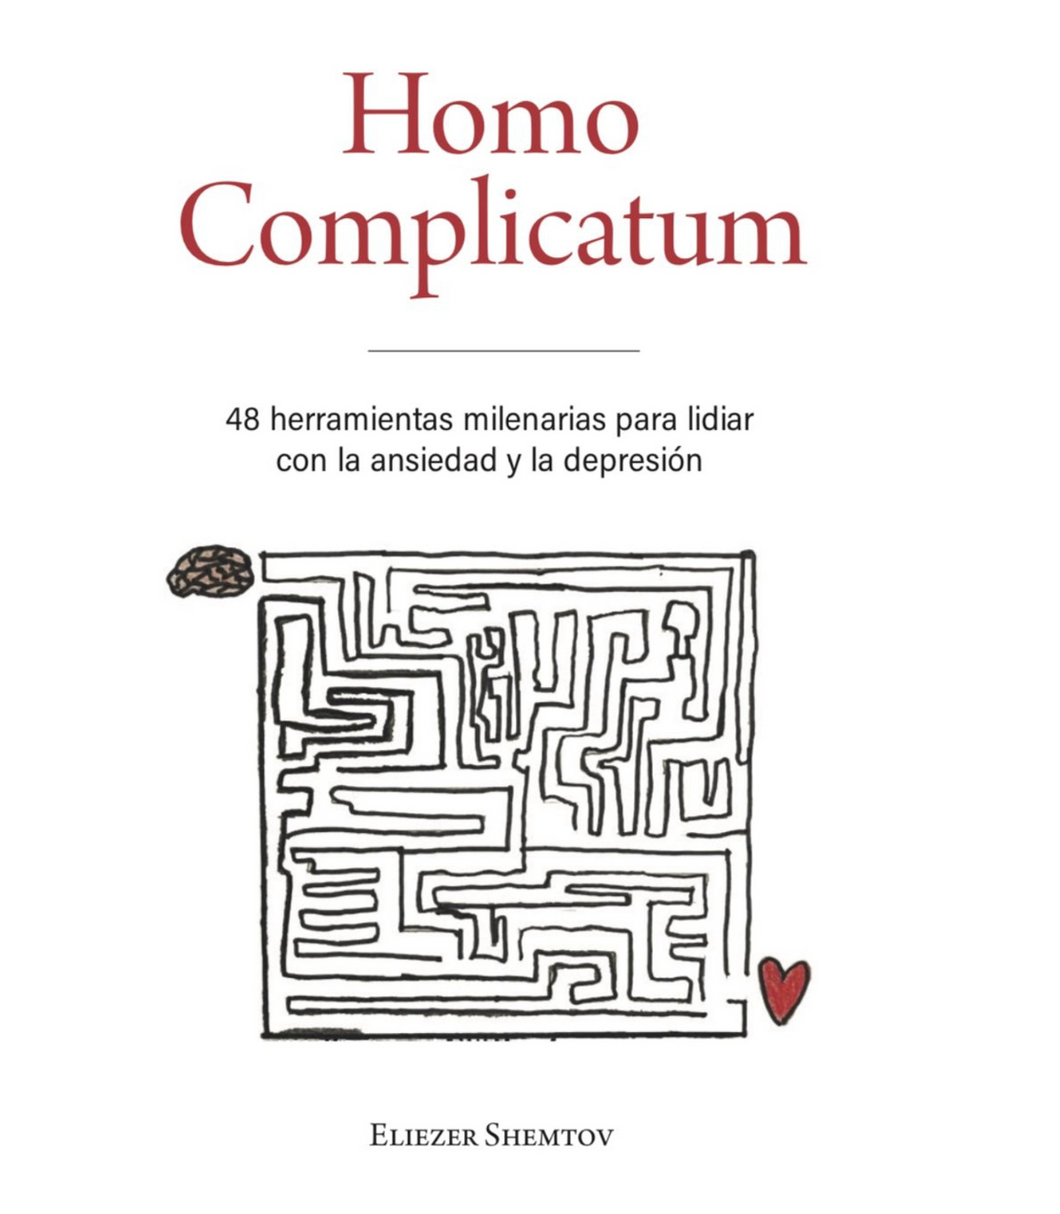 Homo Complicatum